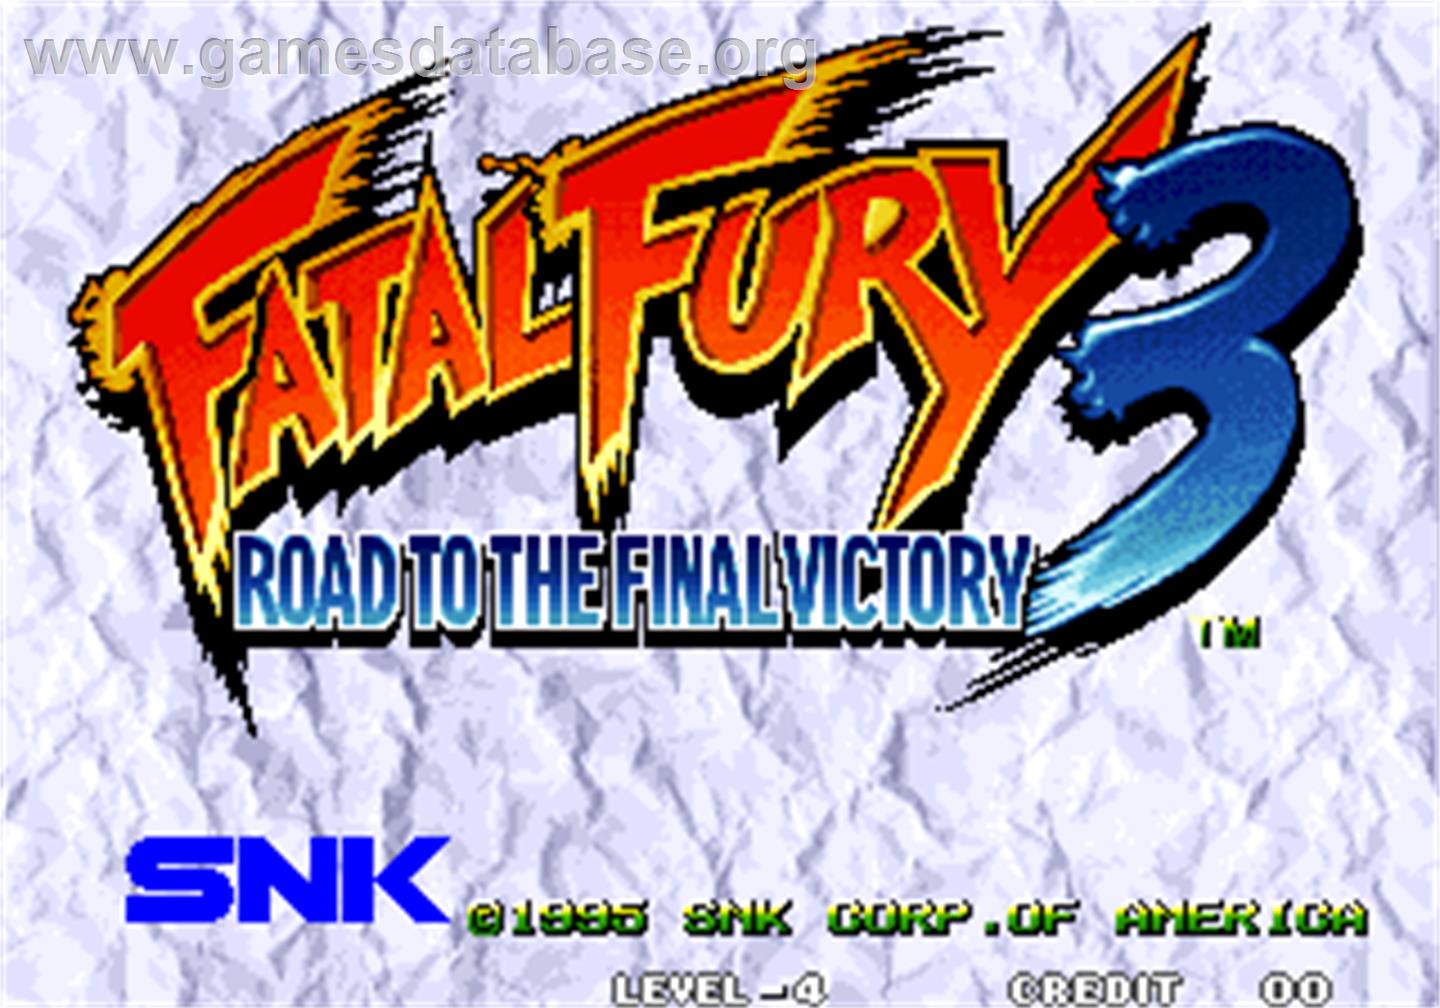 Fatal Fury 3 - Road to the Final Victory / Garou Densetsu 3 - haruka-naru tatakai - Arcade - Artwork - Title Screen